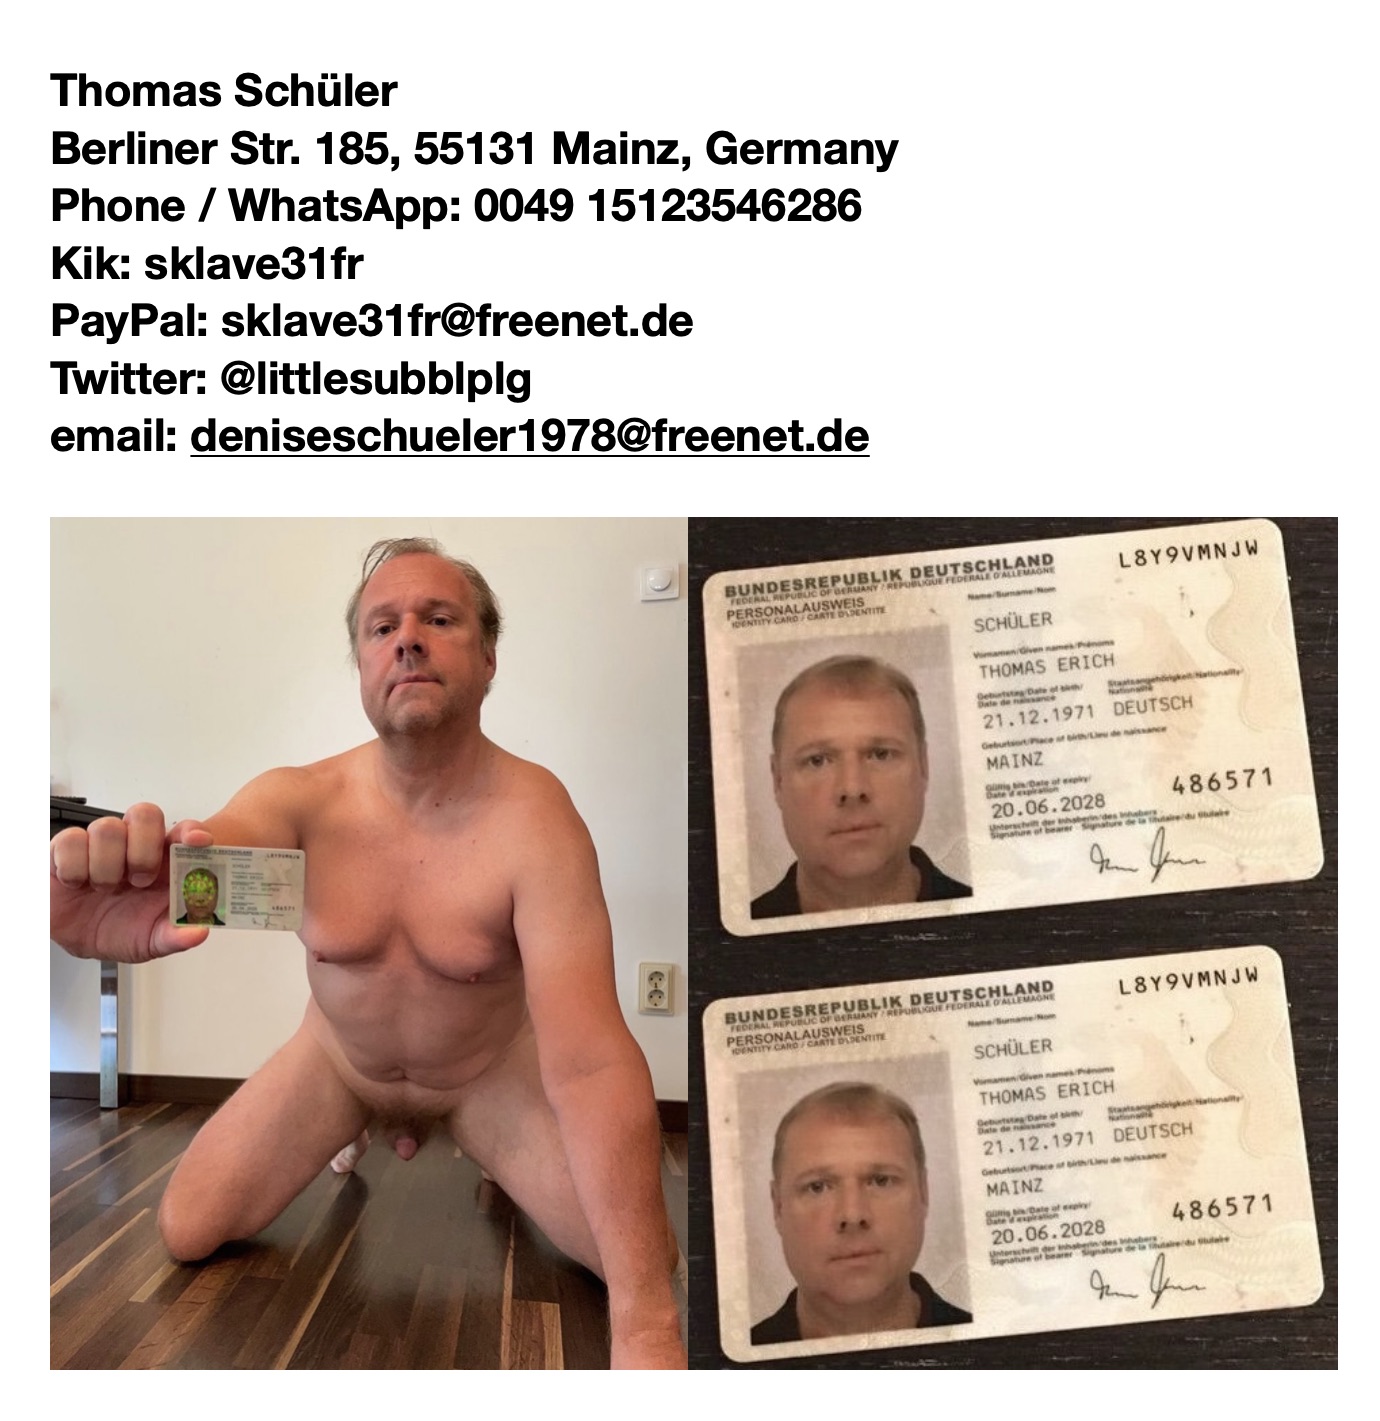 Piggy sl*t Thomas from Mainz alias @piggyslavemz to be exposed